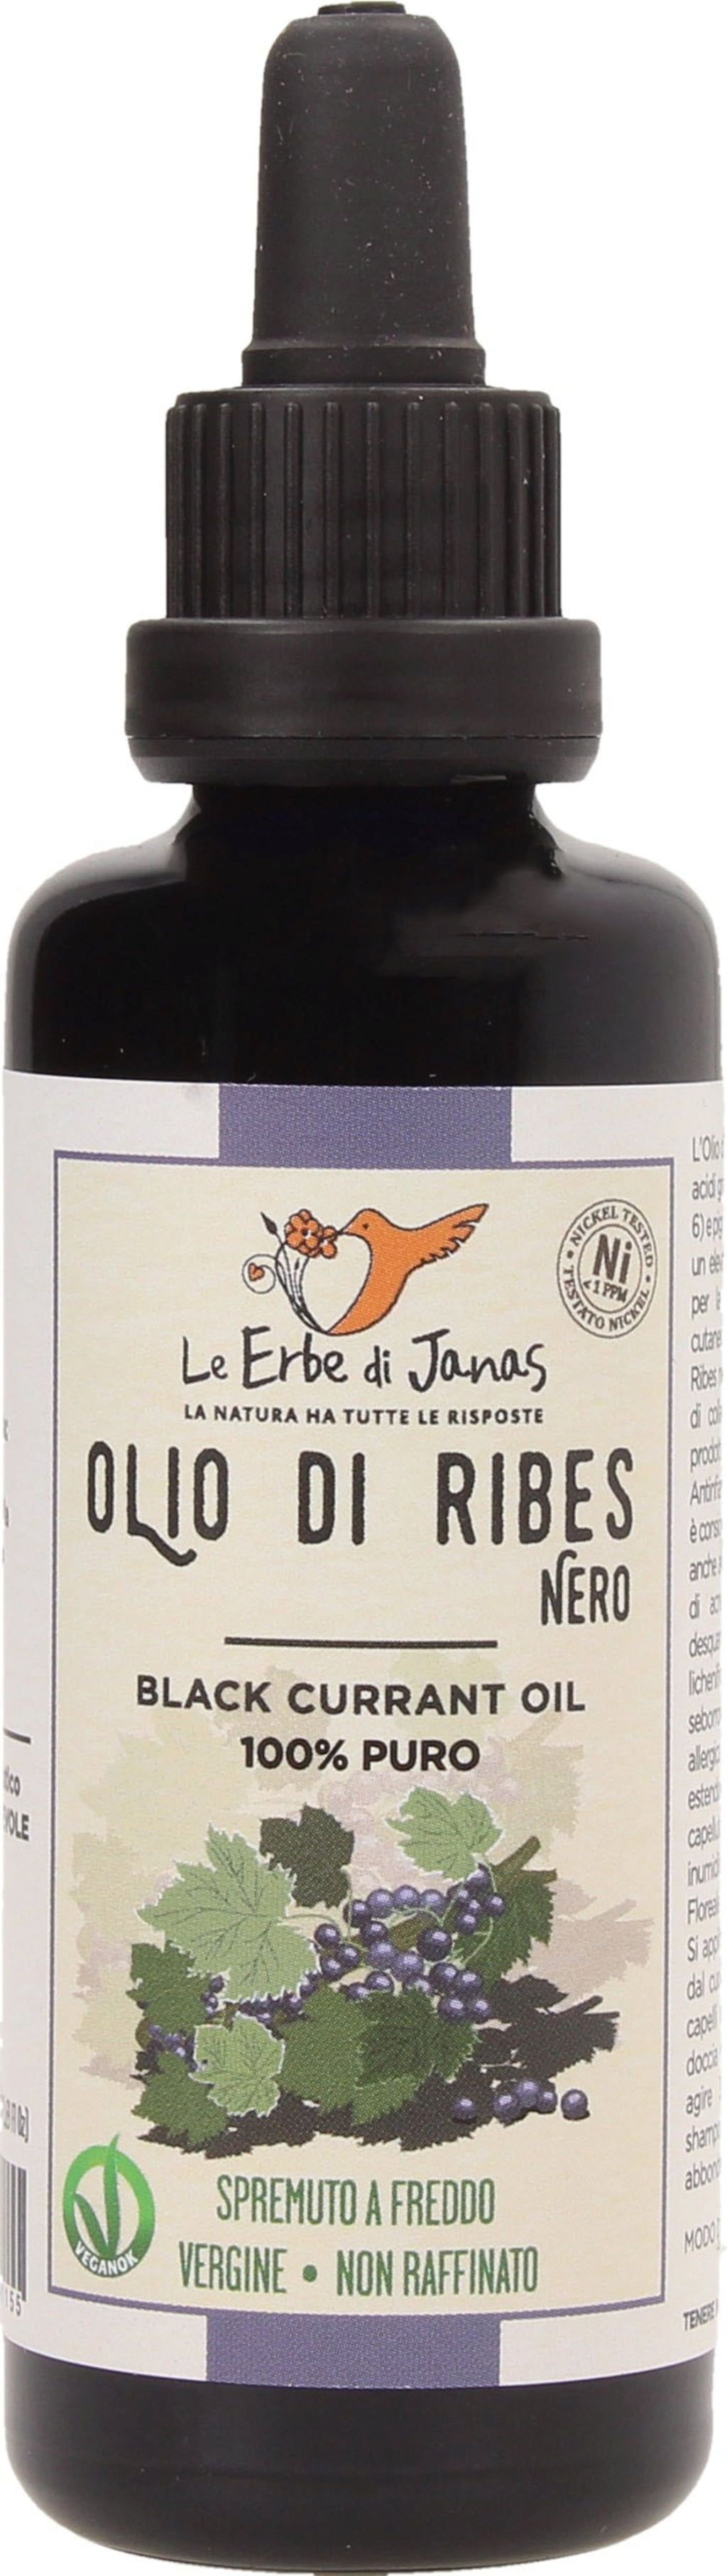 Le Erbe di Janas Olio di Ribes Nero - 50 ml